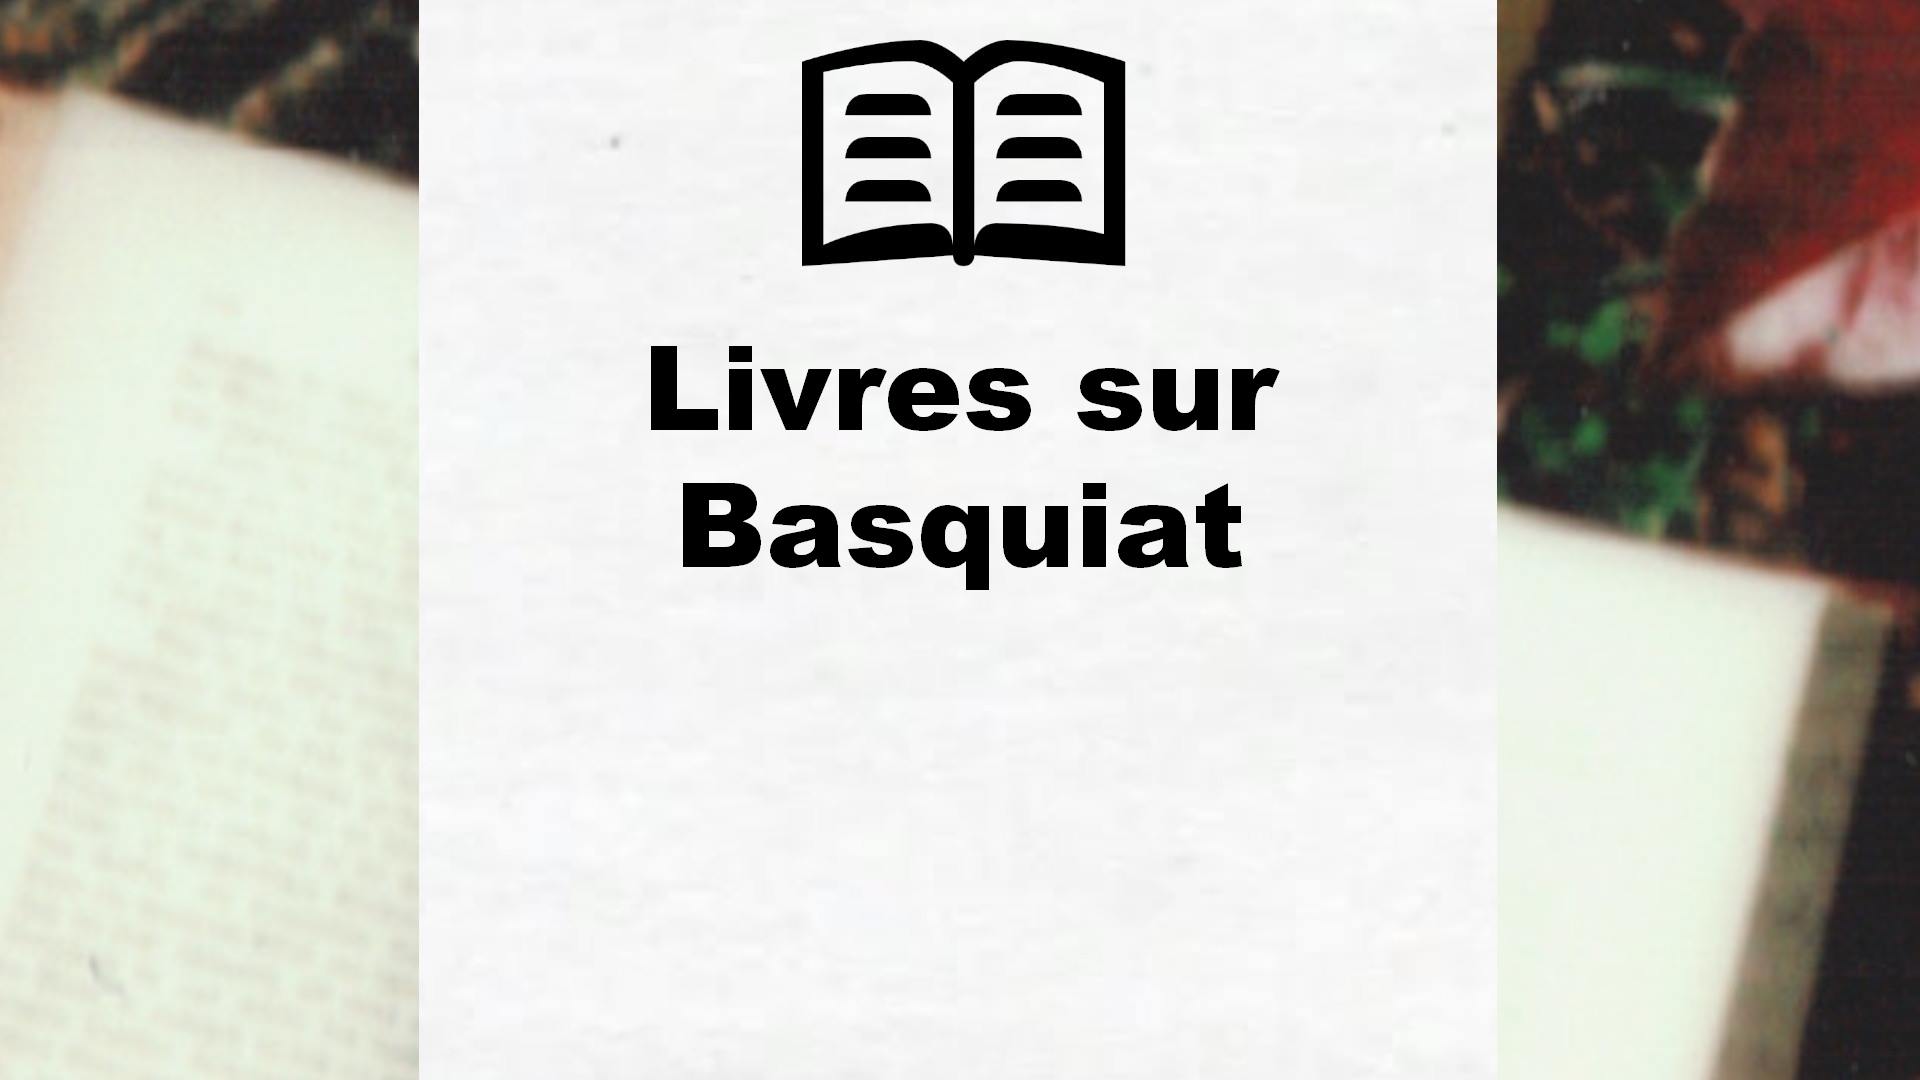 Livres sur Basquiat